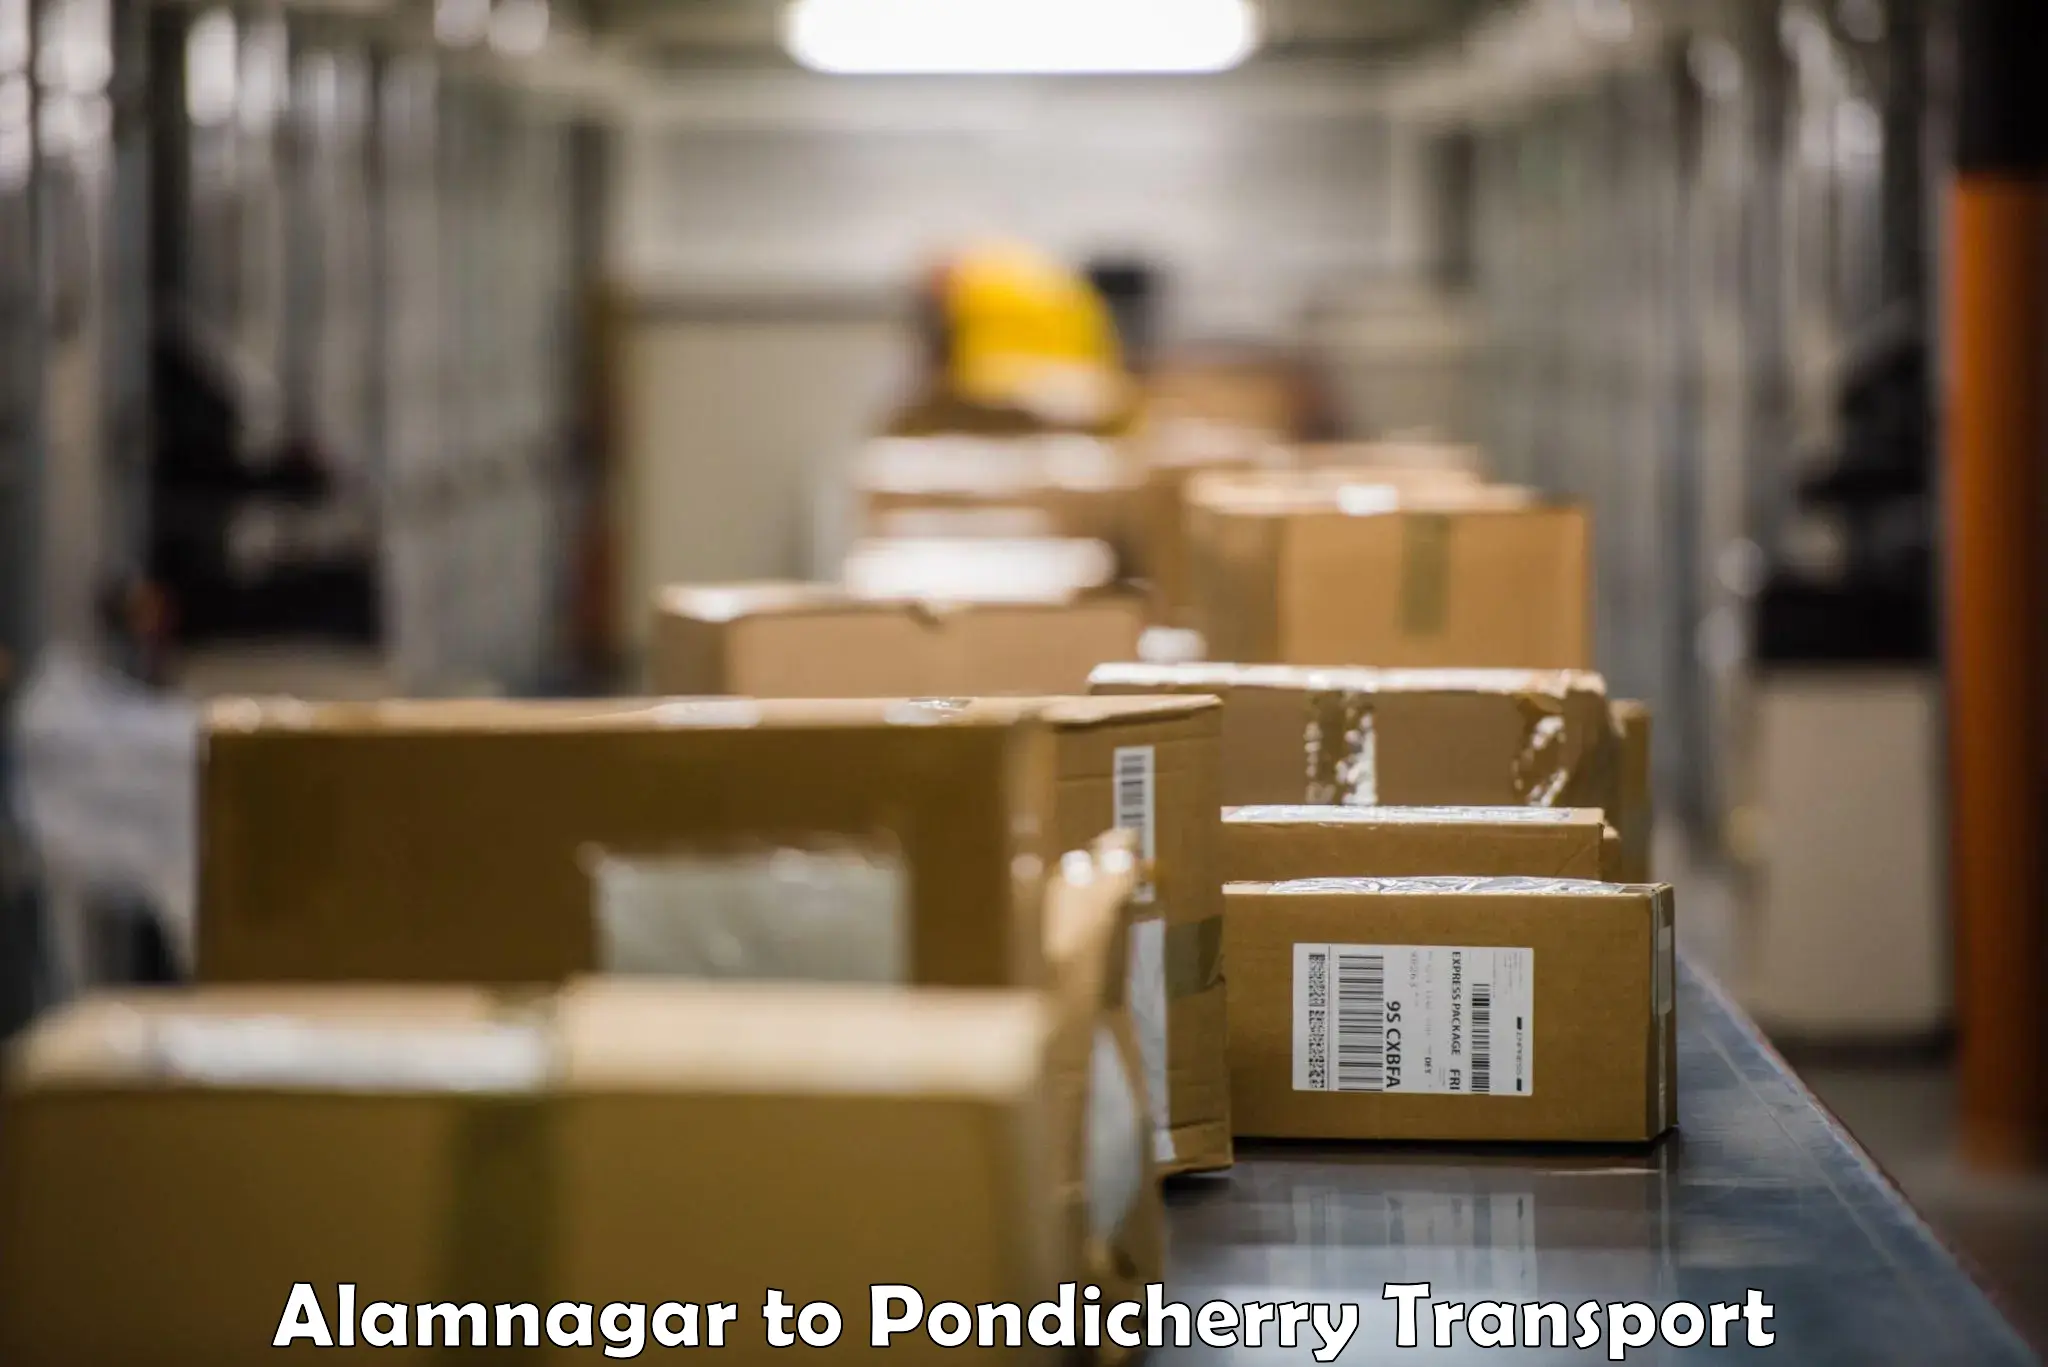 Container transport service Alamnagar to Karaikal